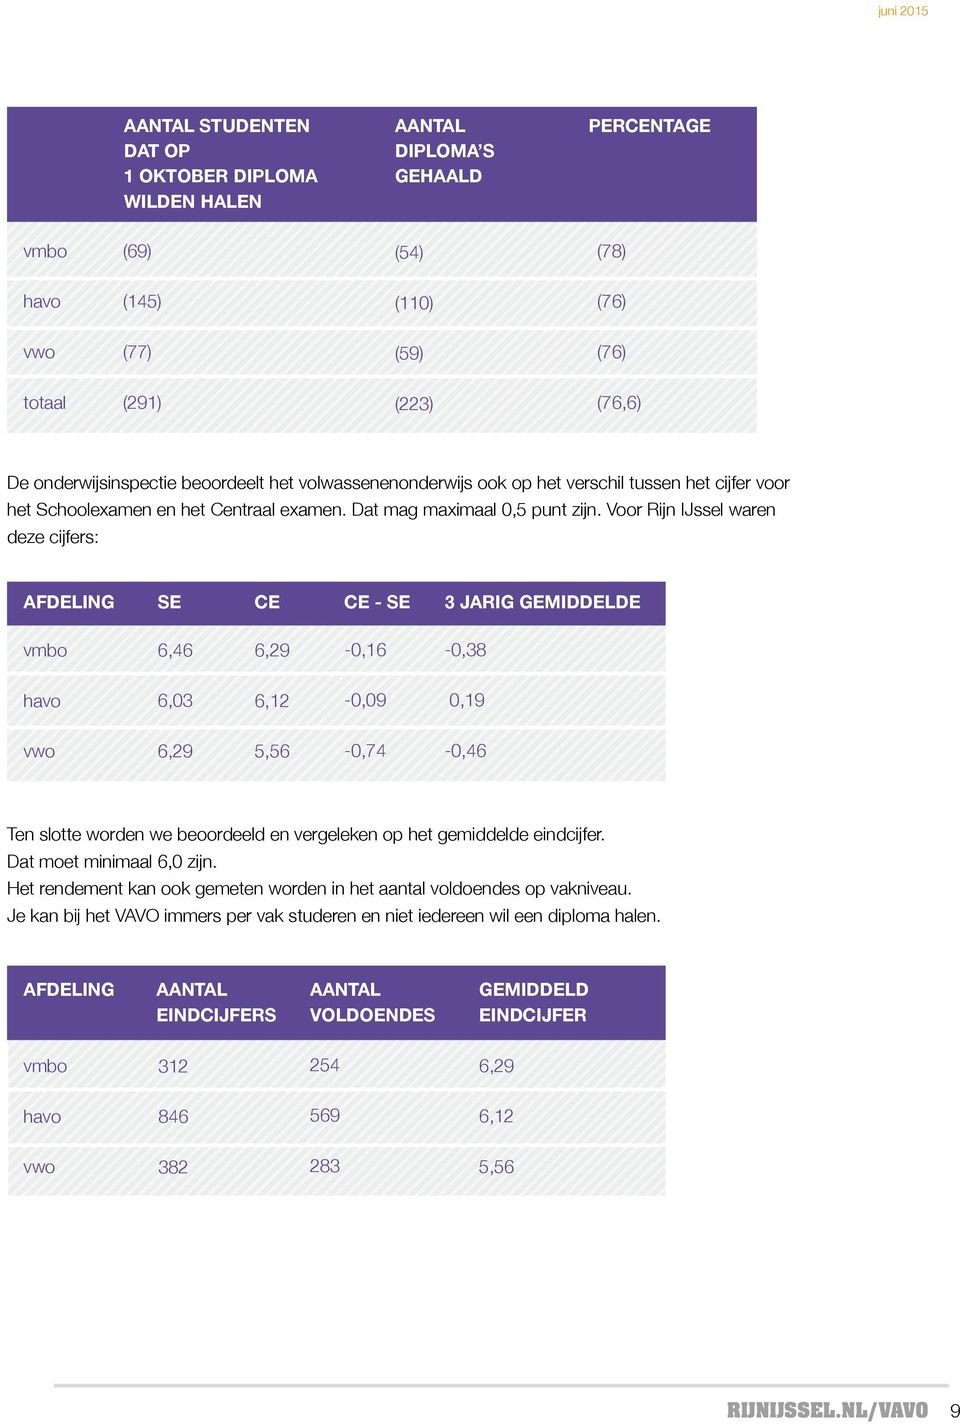 Voor Rijn IJssel waren deze cijfers: Afdeling SE CE CE - SE 3 jarig gemiddelde vmbo 6,46 6,29-0,16-0,38 havo 6,03 6,12-0,09 0,19 vwo 6,29 5,56-0,74-0,46 Ten slotte worden we beoordeeld en vergeleken